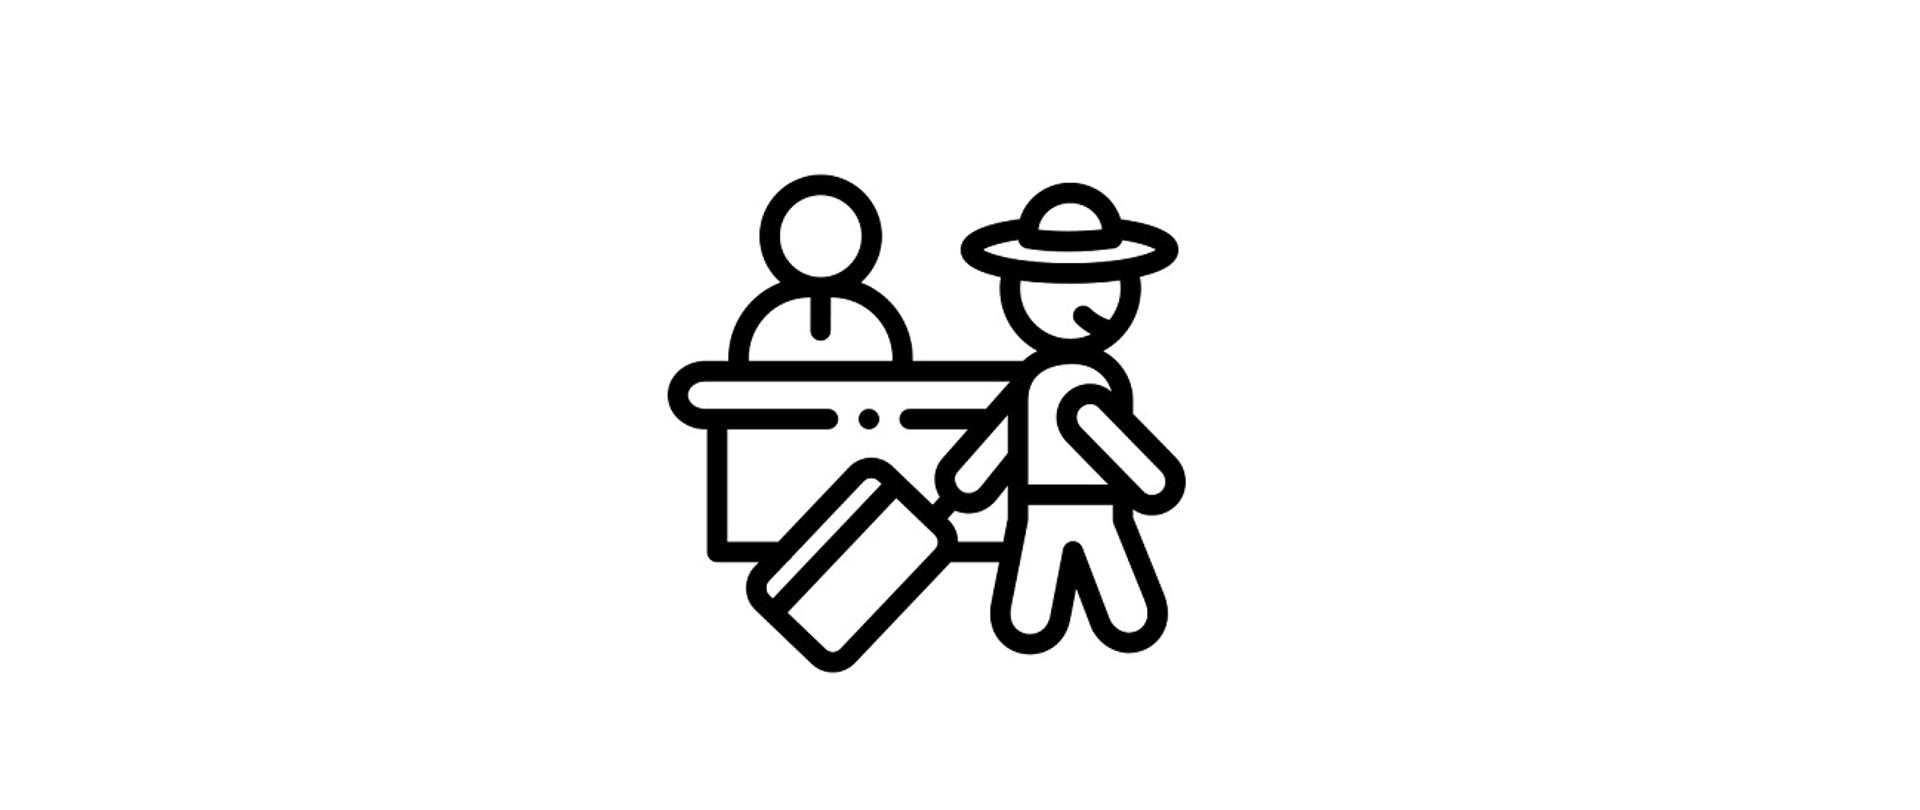 Ikonka przedstawia dwie postacie, podróżnego i recepcjonistę